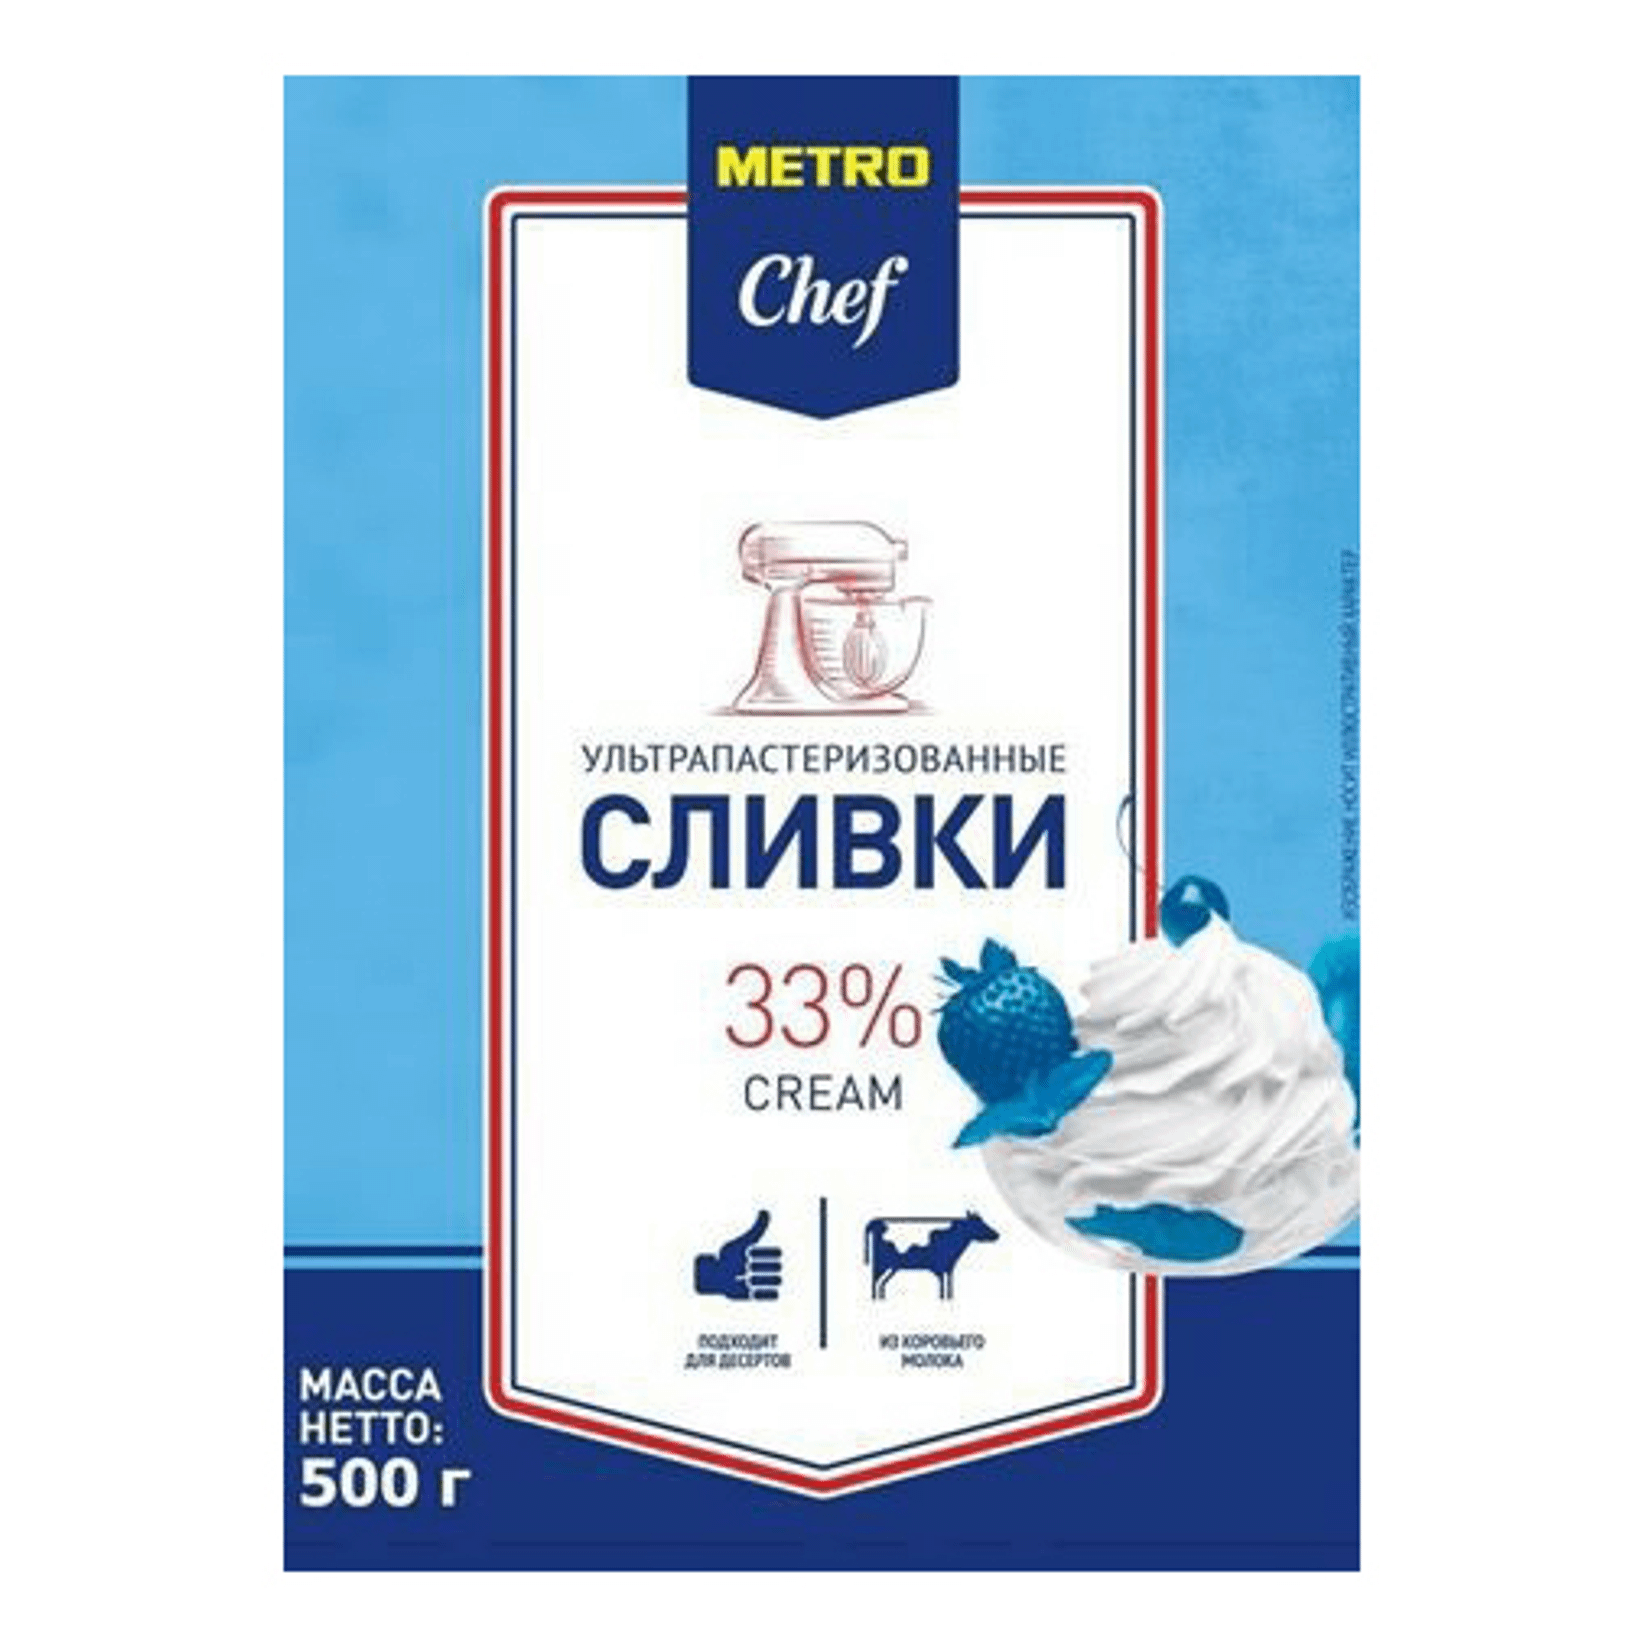 Сливки METRO Chef ультрапастеризованные 33% 500 мл